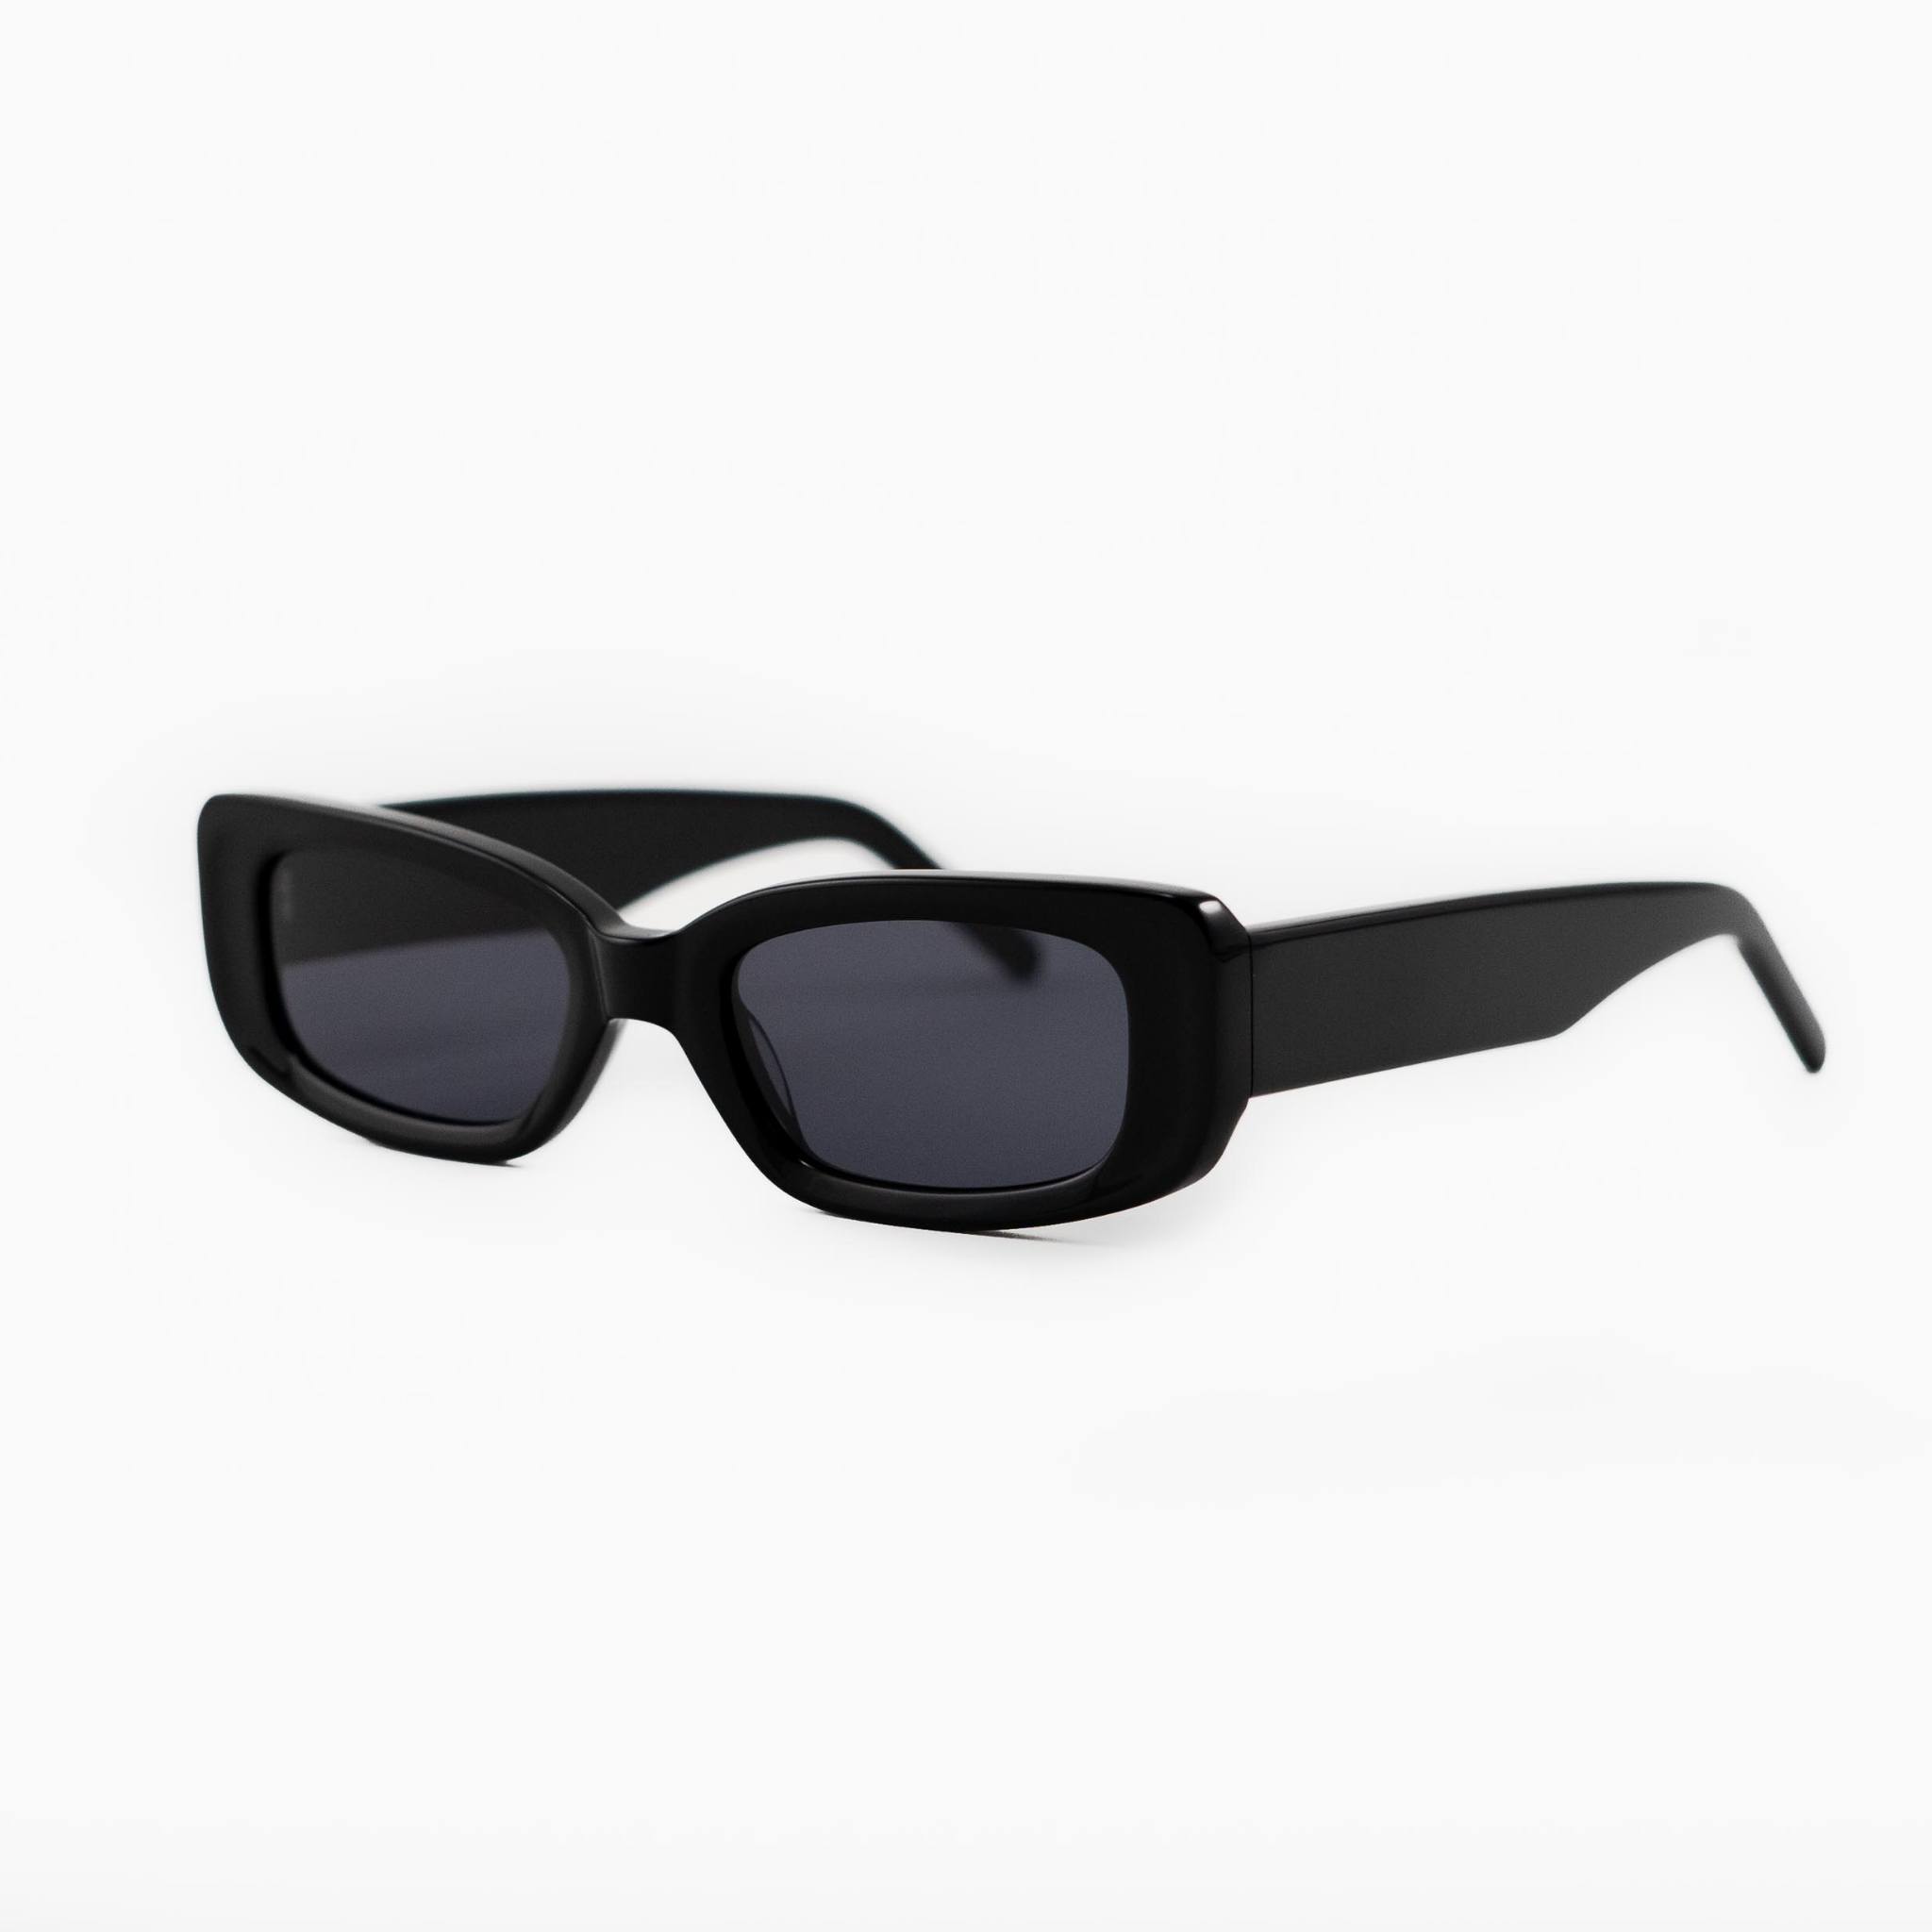 Palermo Black | Sunglasses